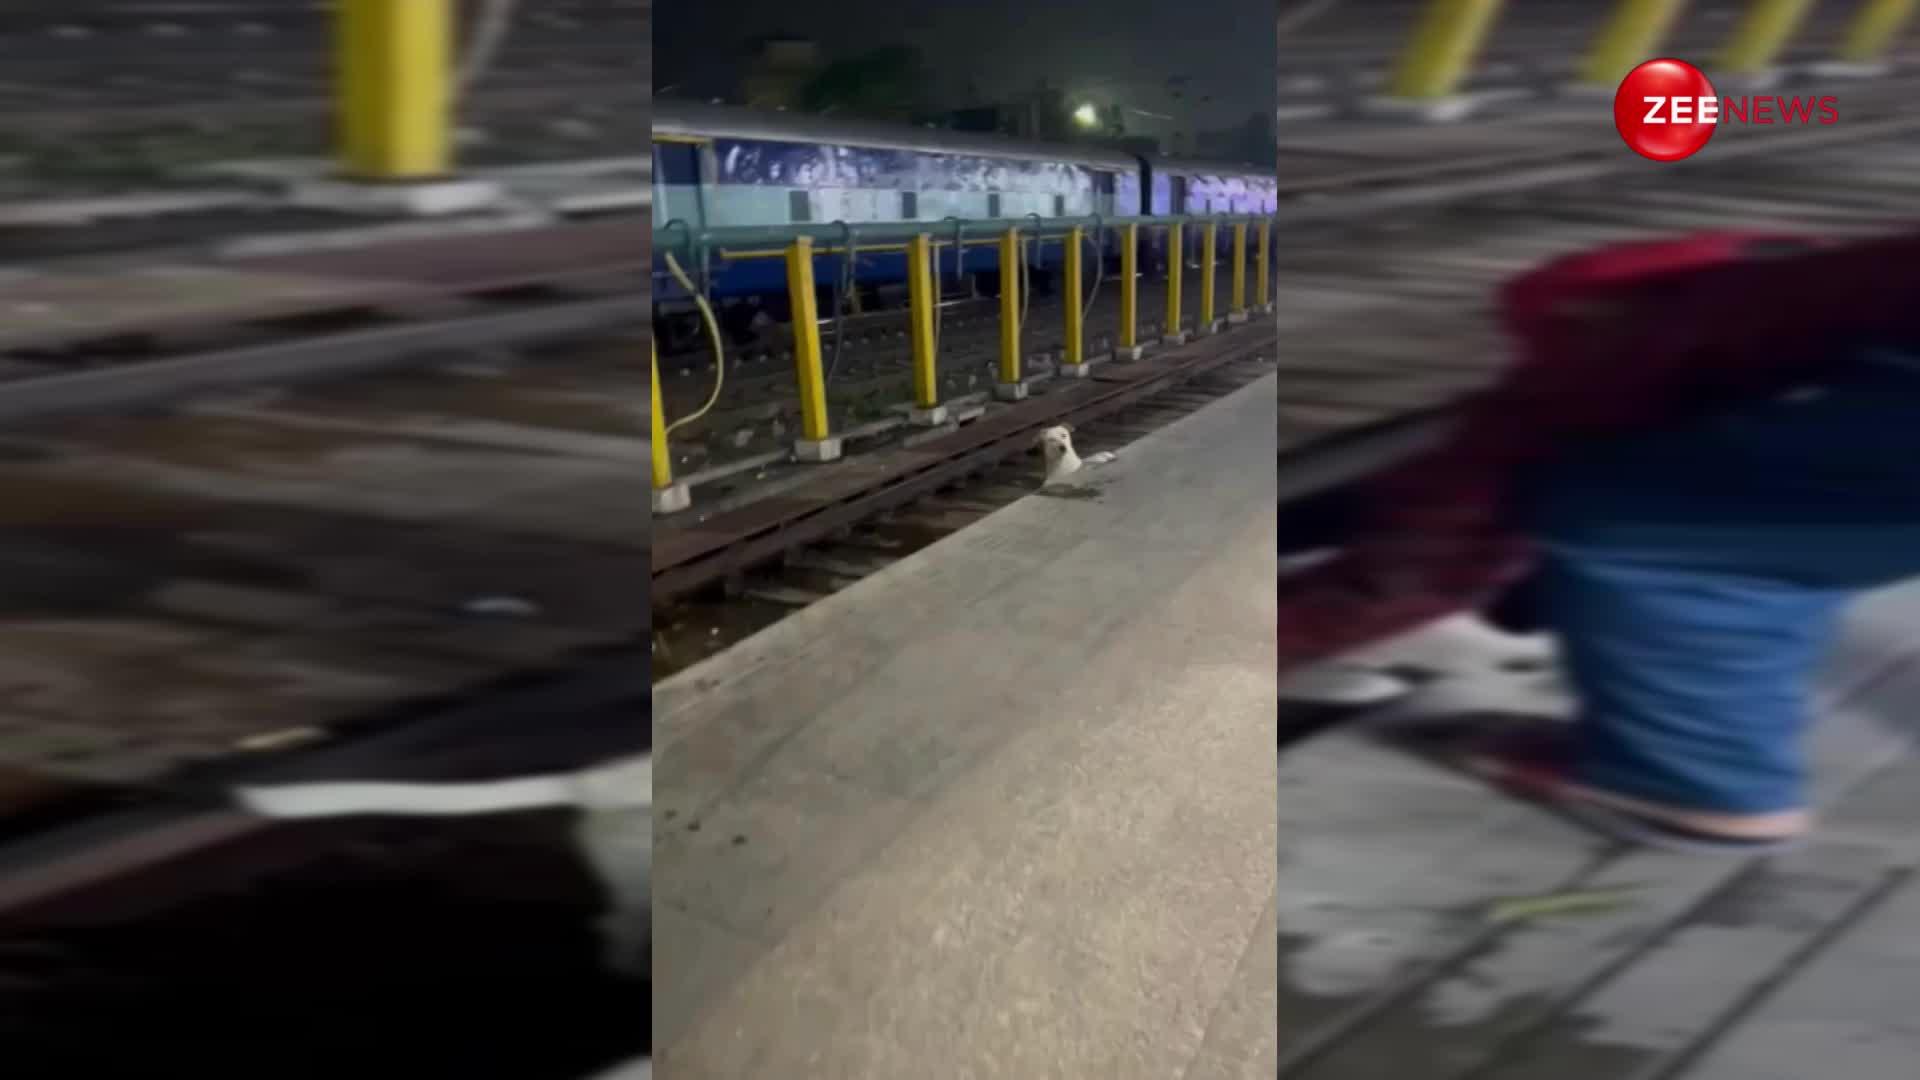 रेलवे की पटरी पर फंस गया था कुत्ता, शख्स ने देखते ही की मदद; वीडियो पर लोगों ने लुटाया प्यार